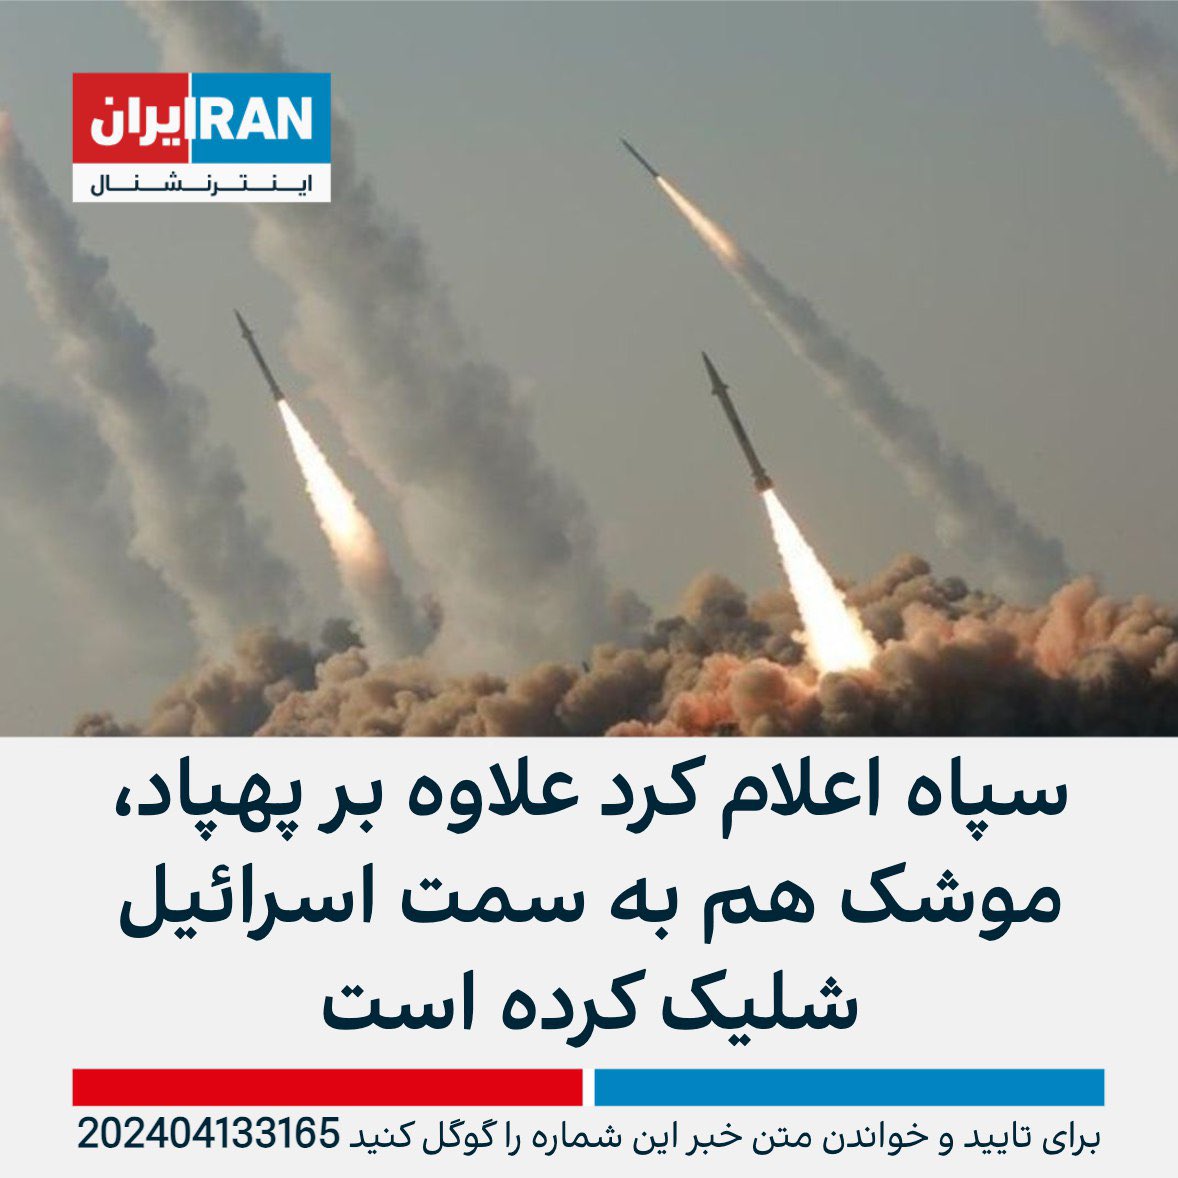 Revolutionsgarden im #iran: Drohnen- und Raketenangriffe auf #israel. Müssen die immer noch nicht auf die Terrorliste? #IRGCterrorists